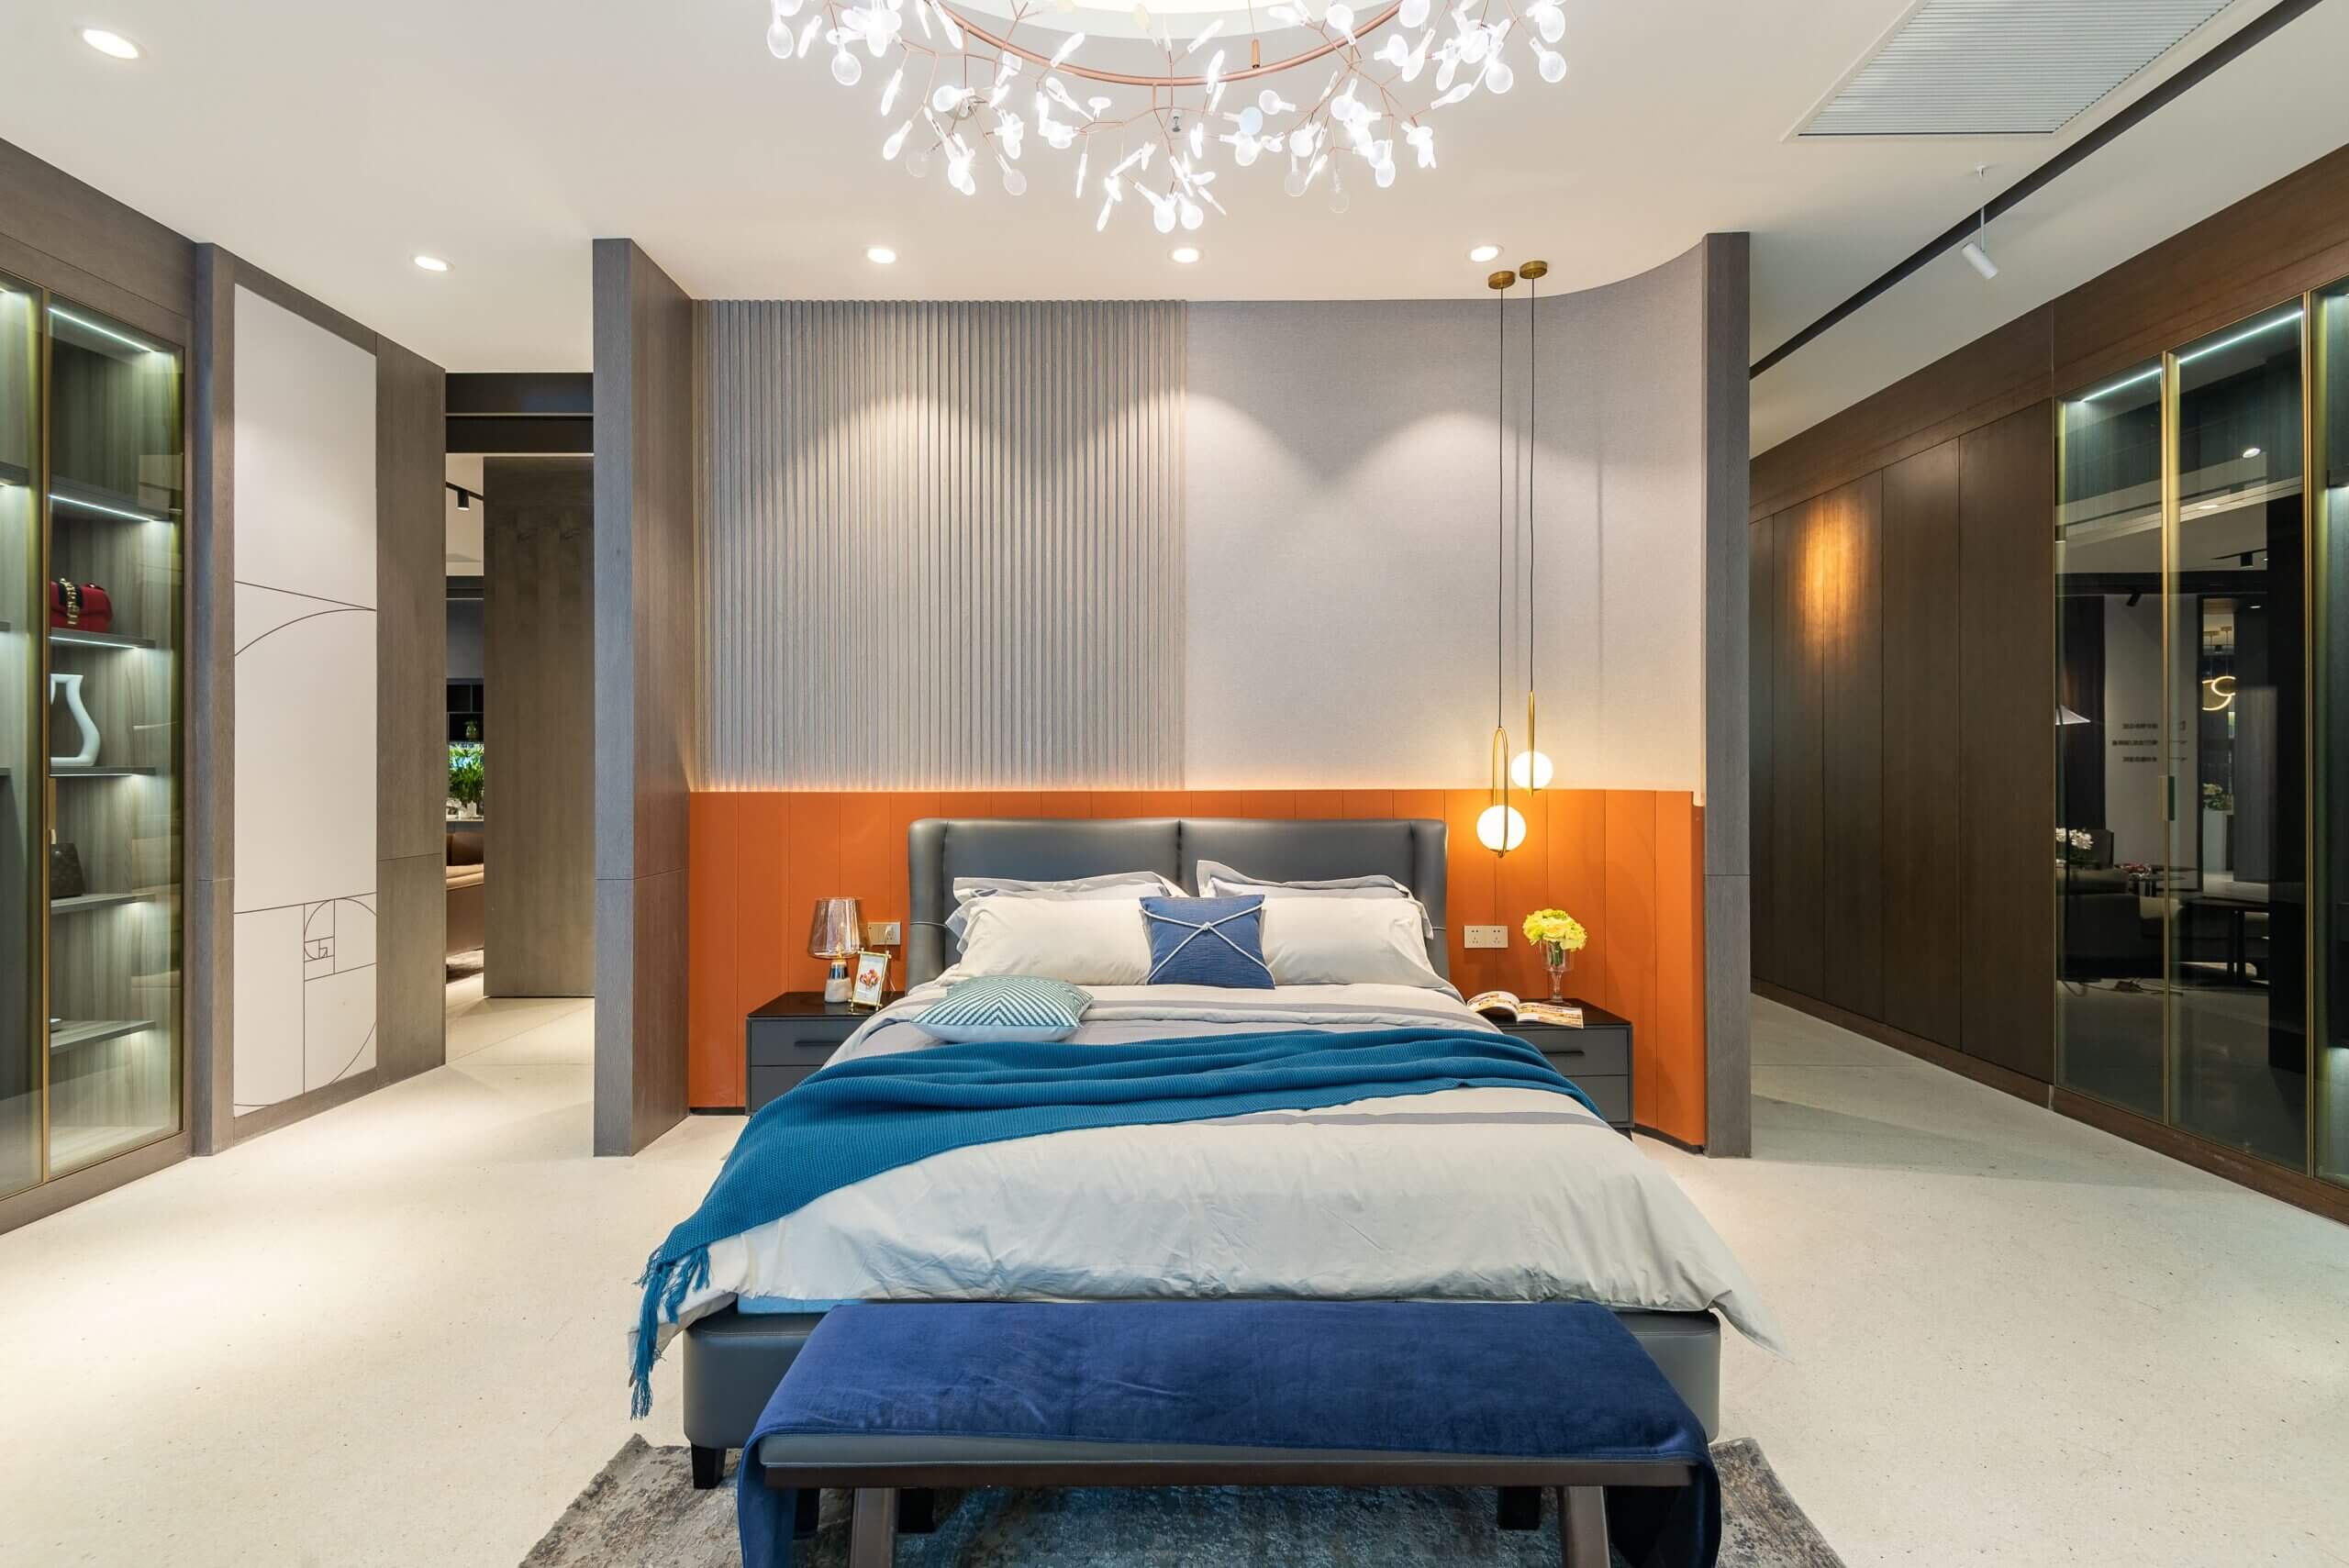 Thiết kế phòng ngủ người lớn gam màu xanh